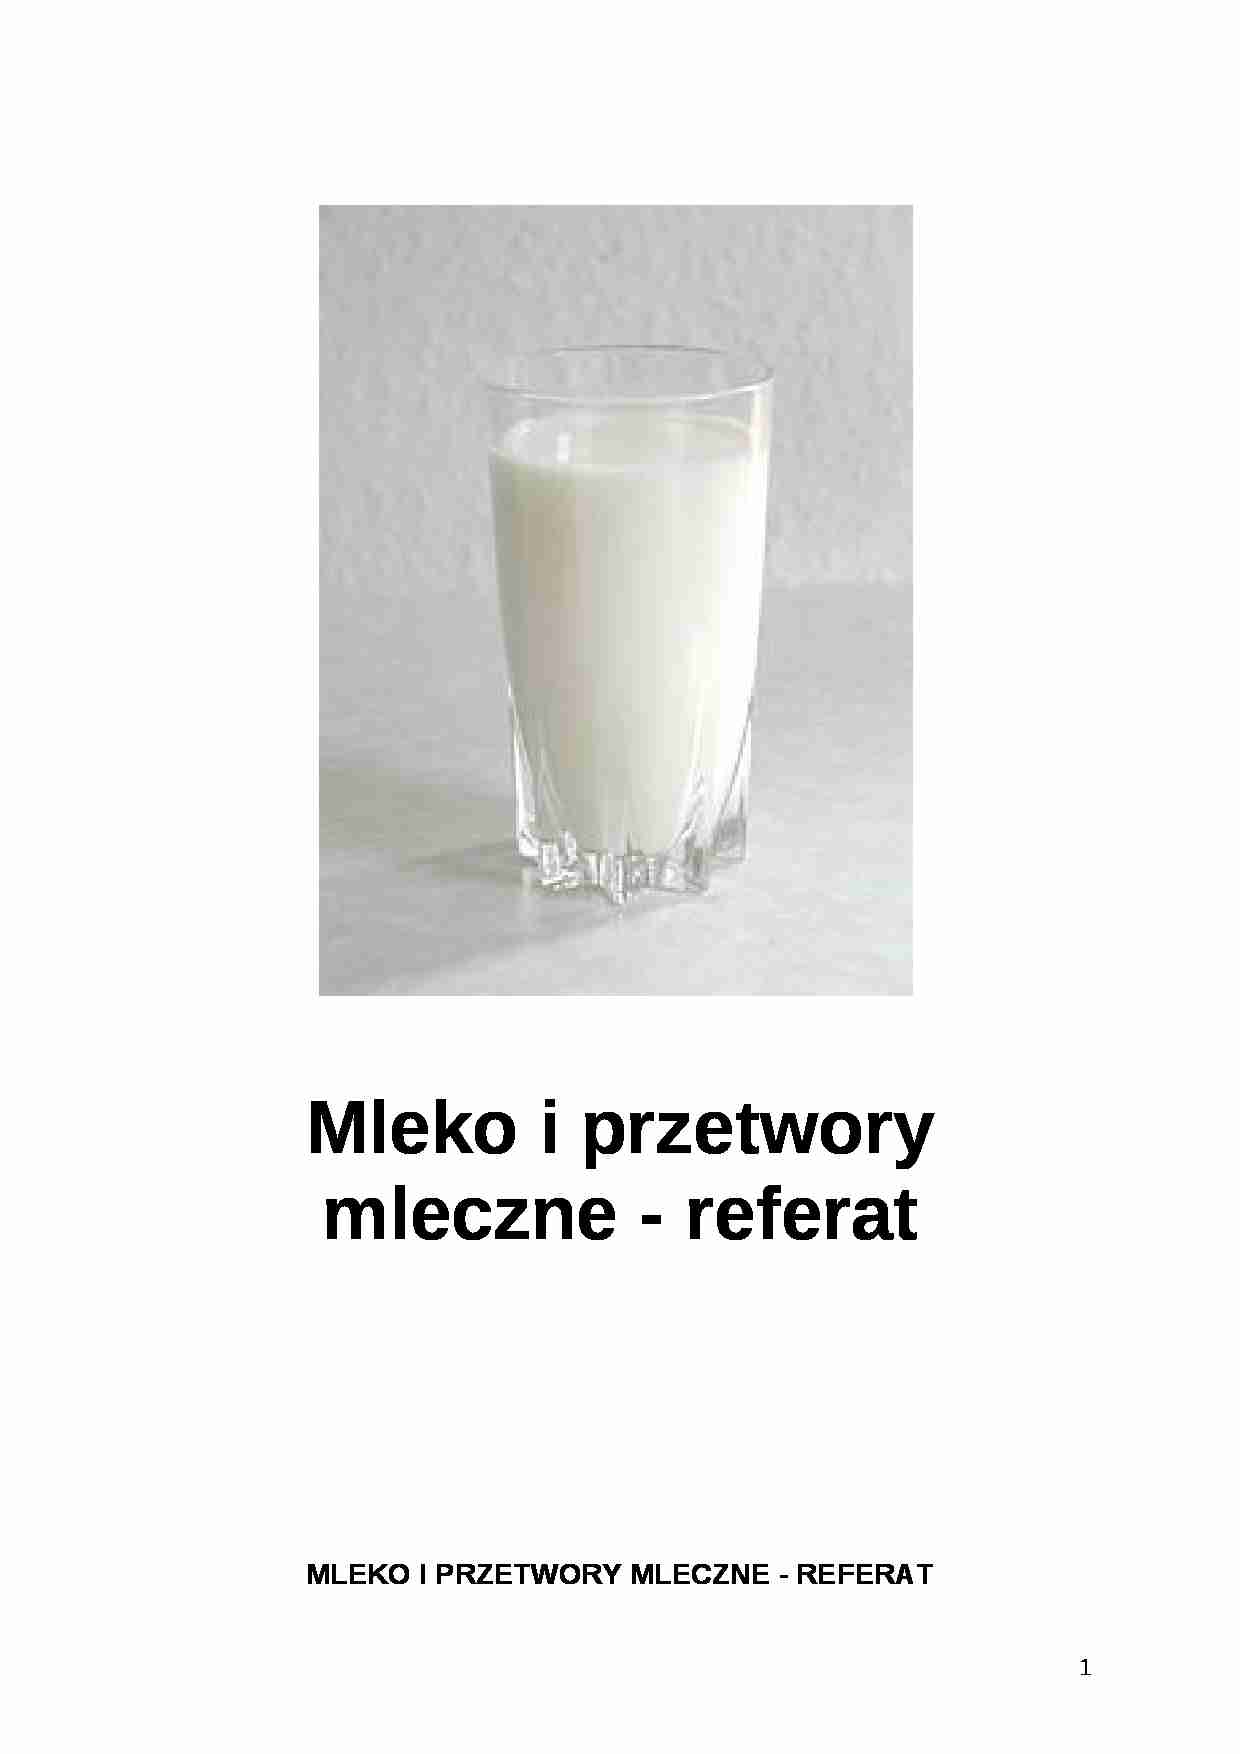 Mleko i przetwory mleczne - referat - strona 1